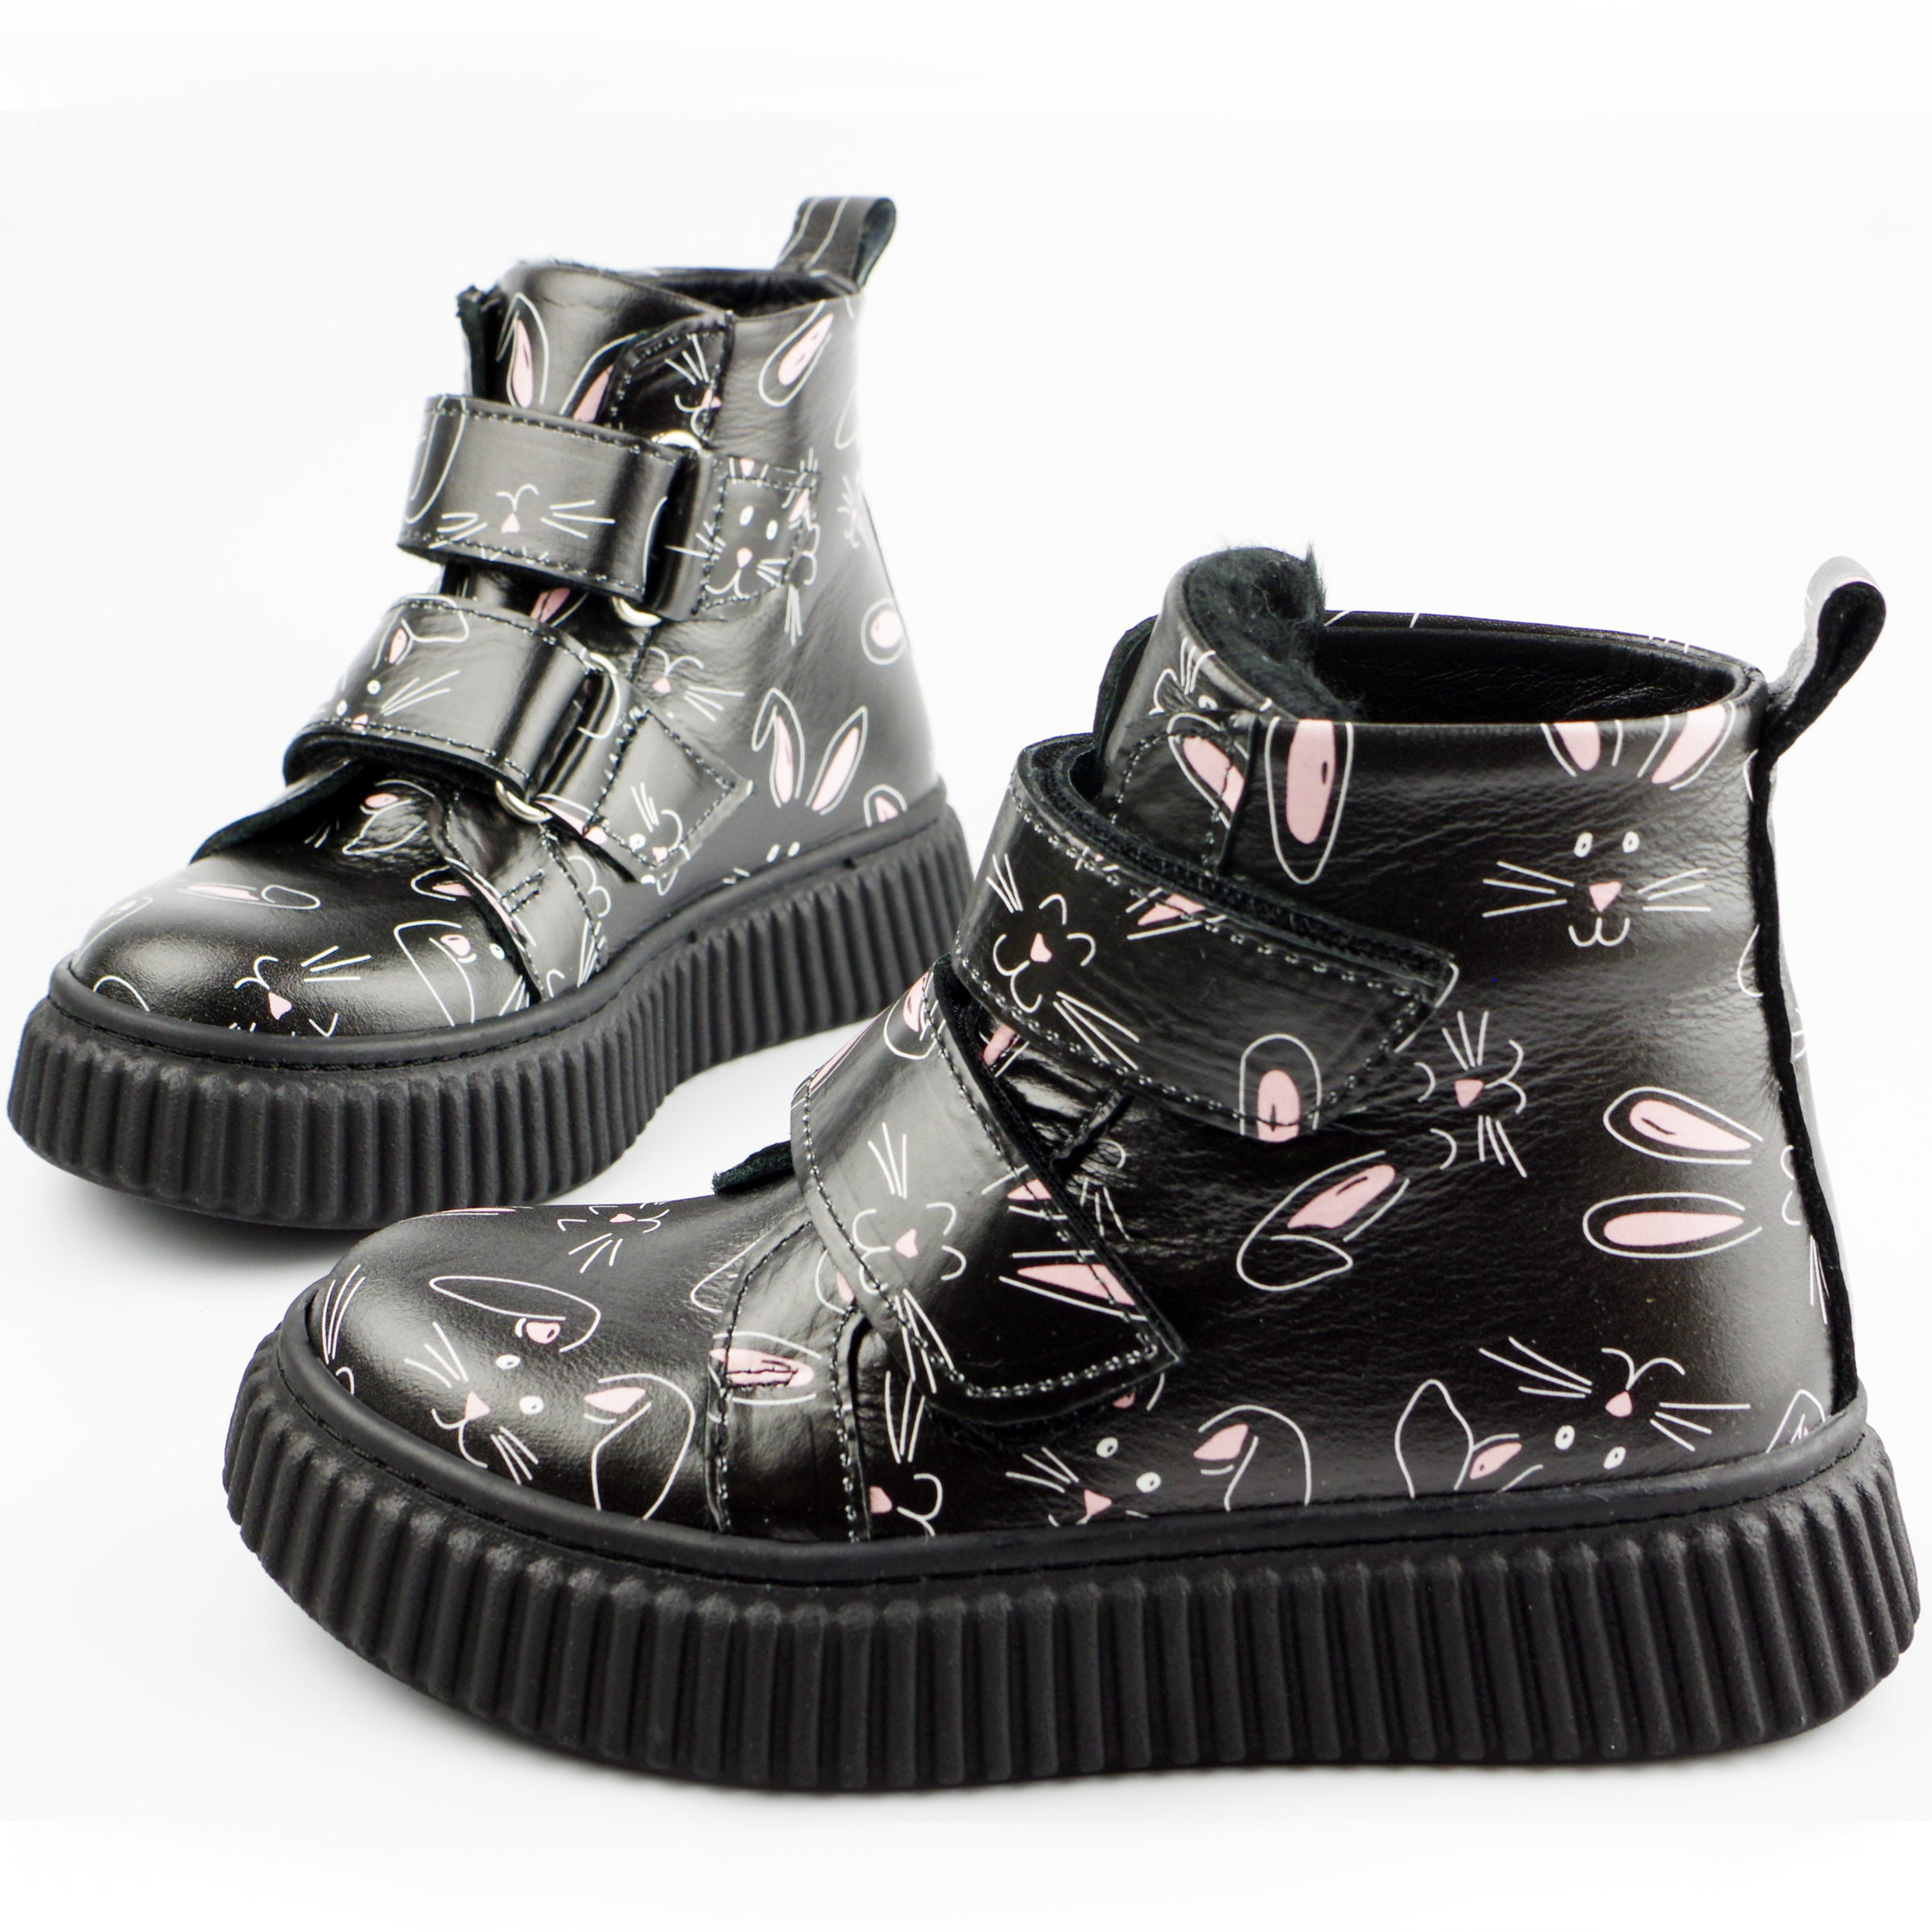 Демисезонные ботинки Зайчата (2121) материал Натуральная кожа, цвет Черный  для девочки 26-30 размеры – Sole Kids. Фото 3